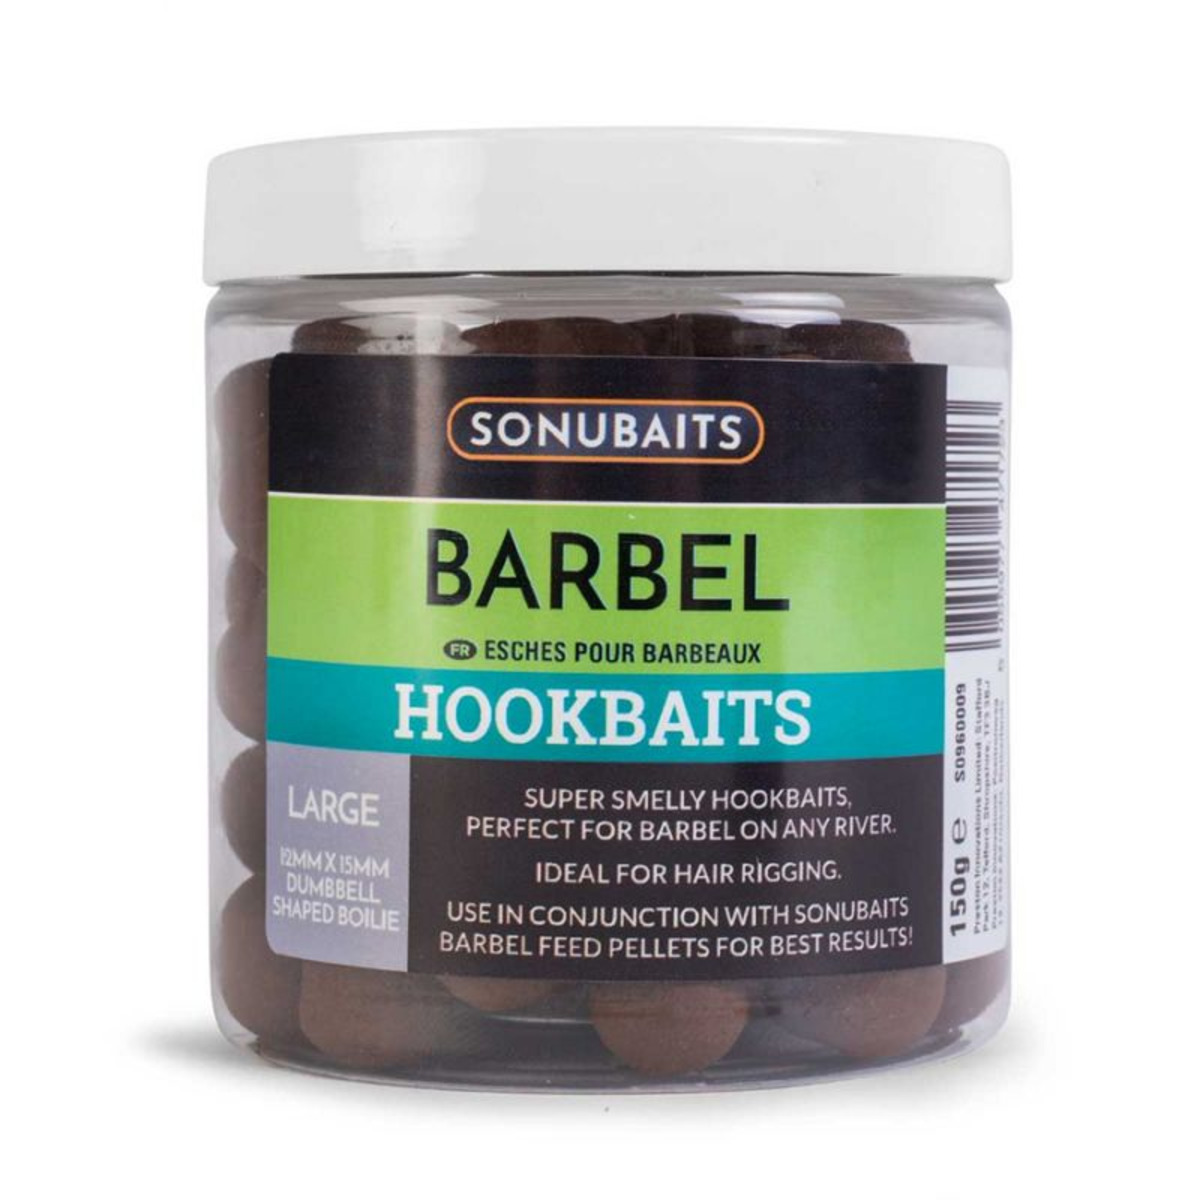 Sonubaits Barbel Hookbaits - Large